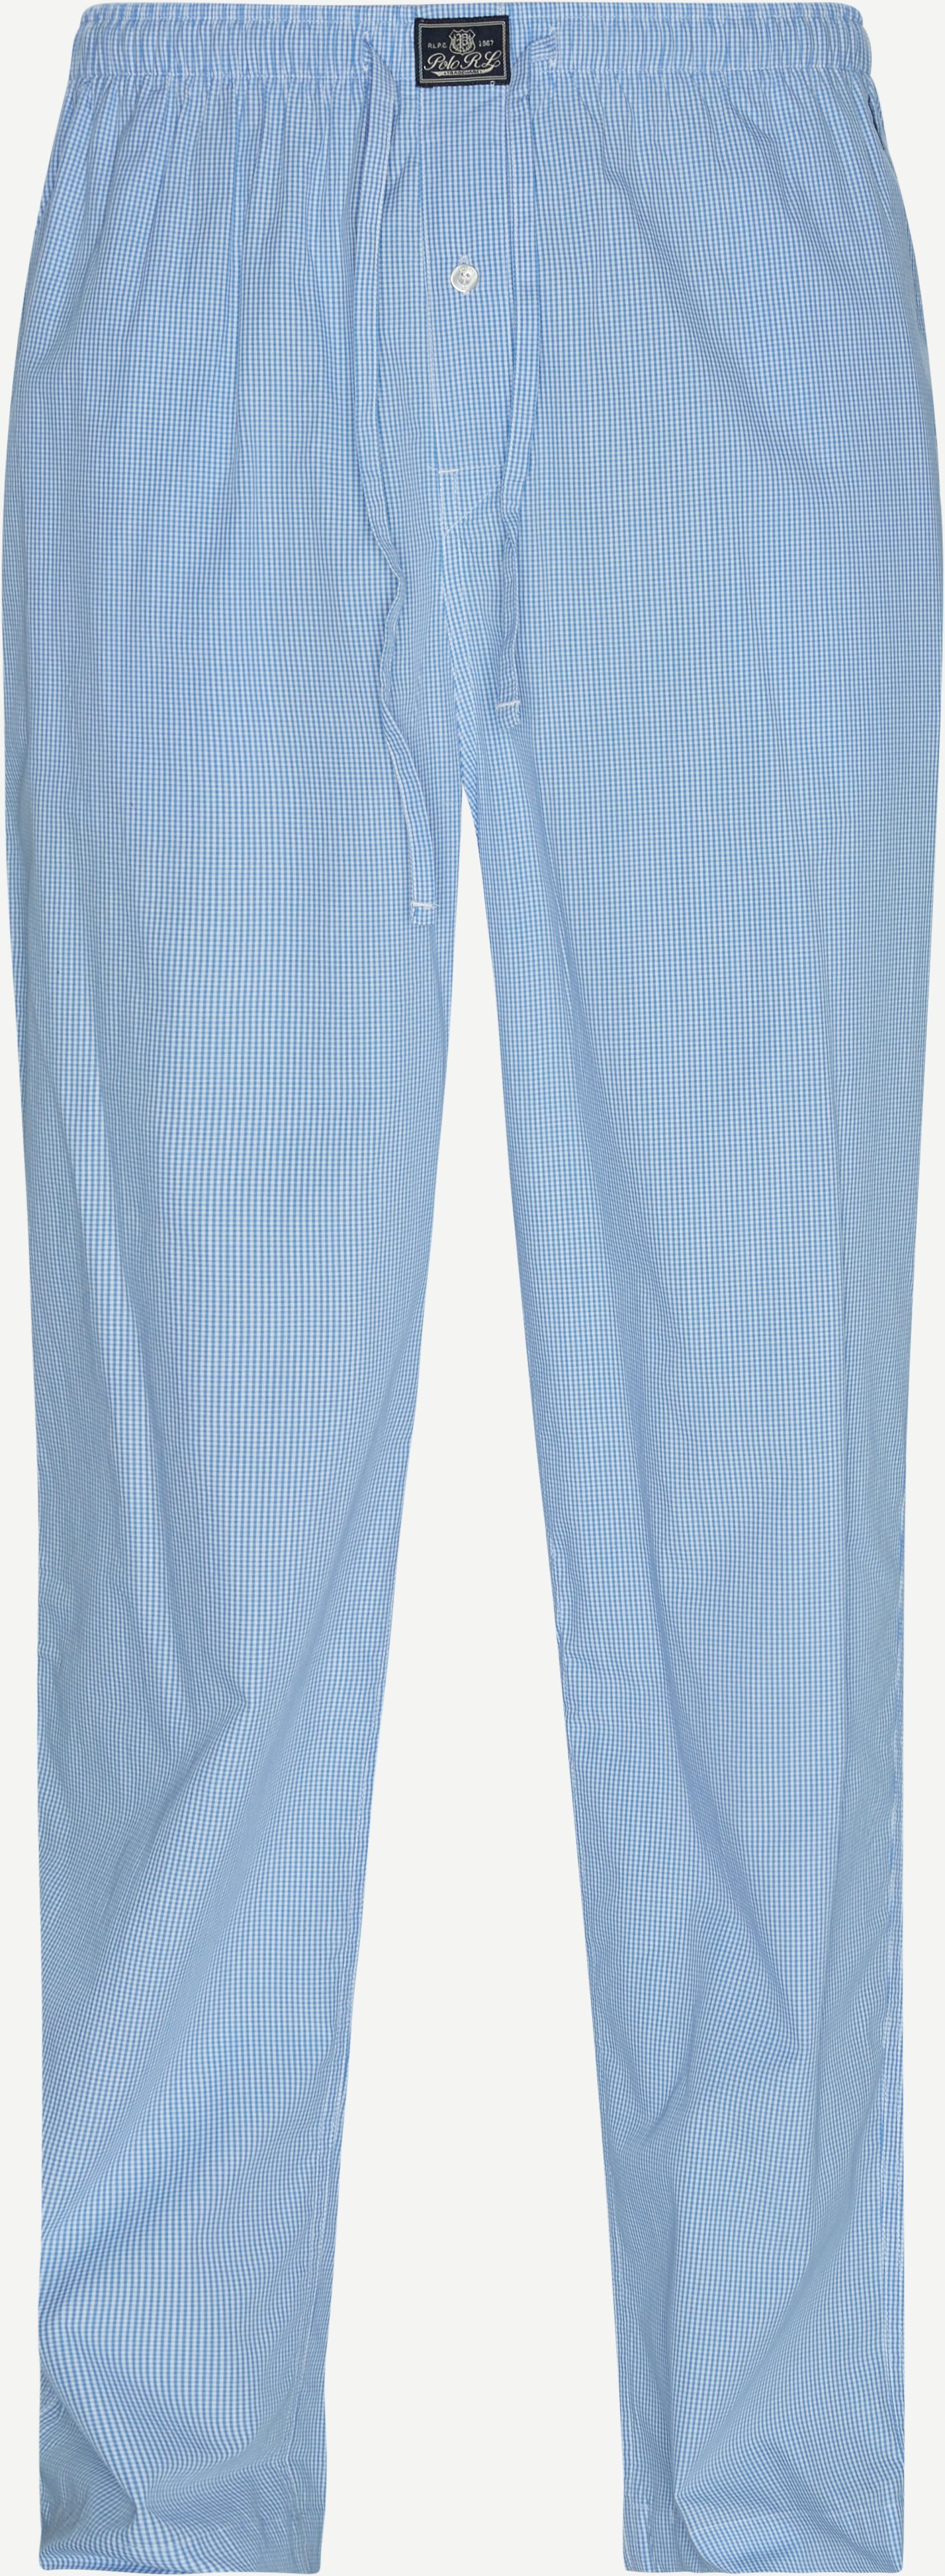 Pyjamasbyxor - Underkläder - Regular fit - Blå